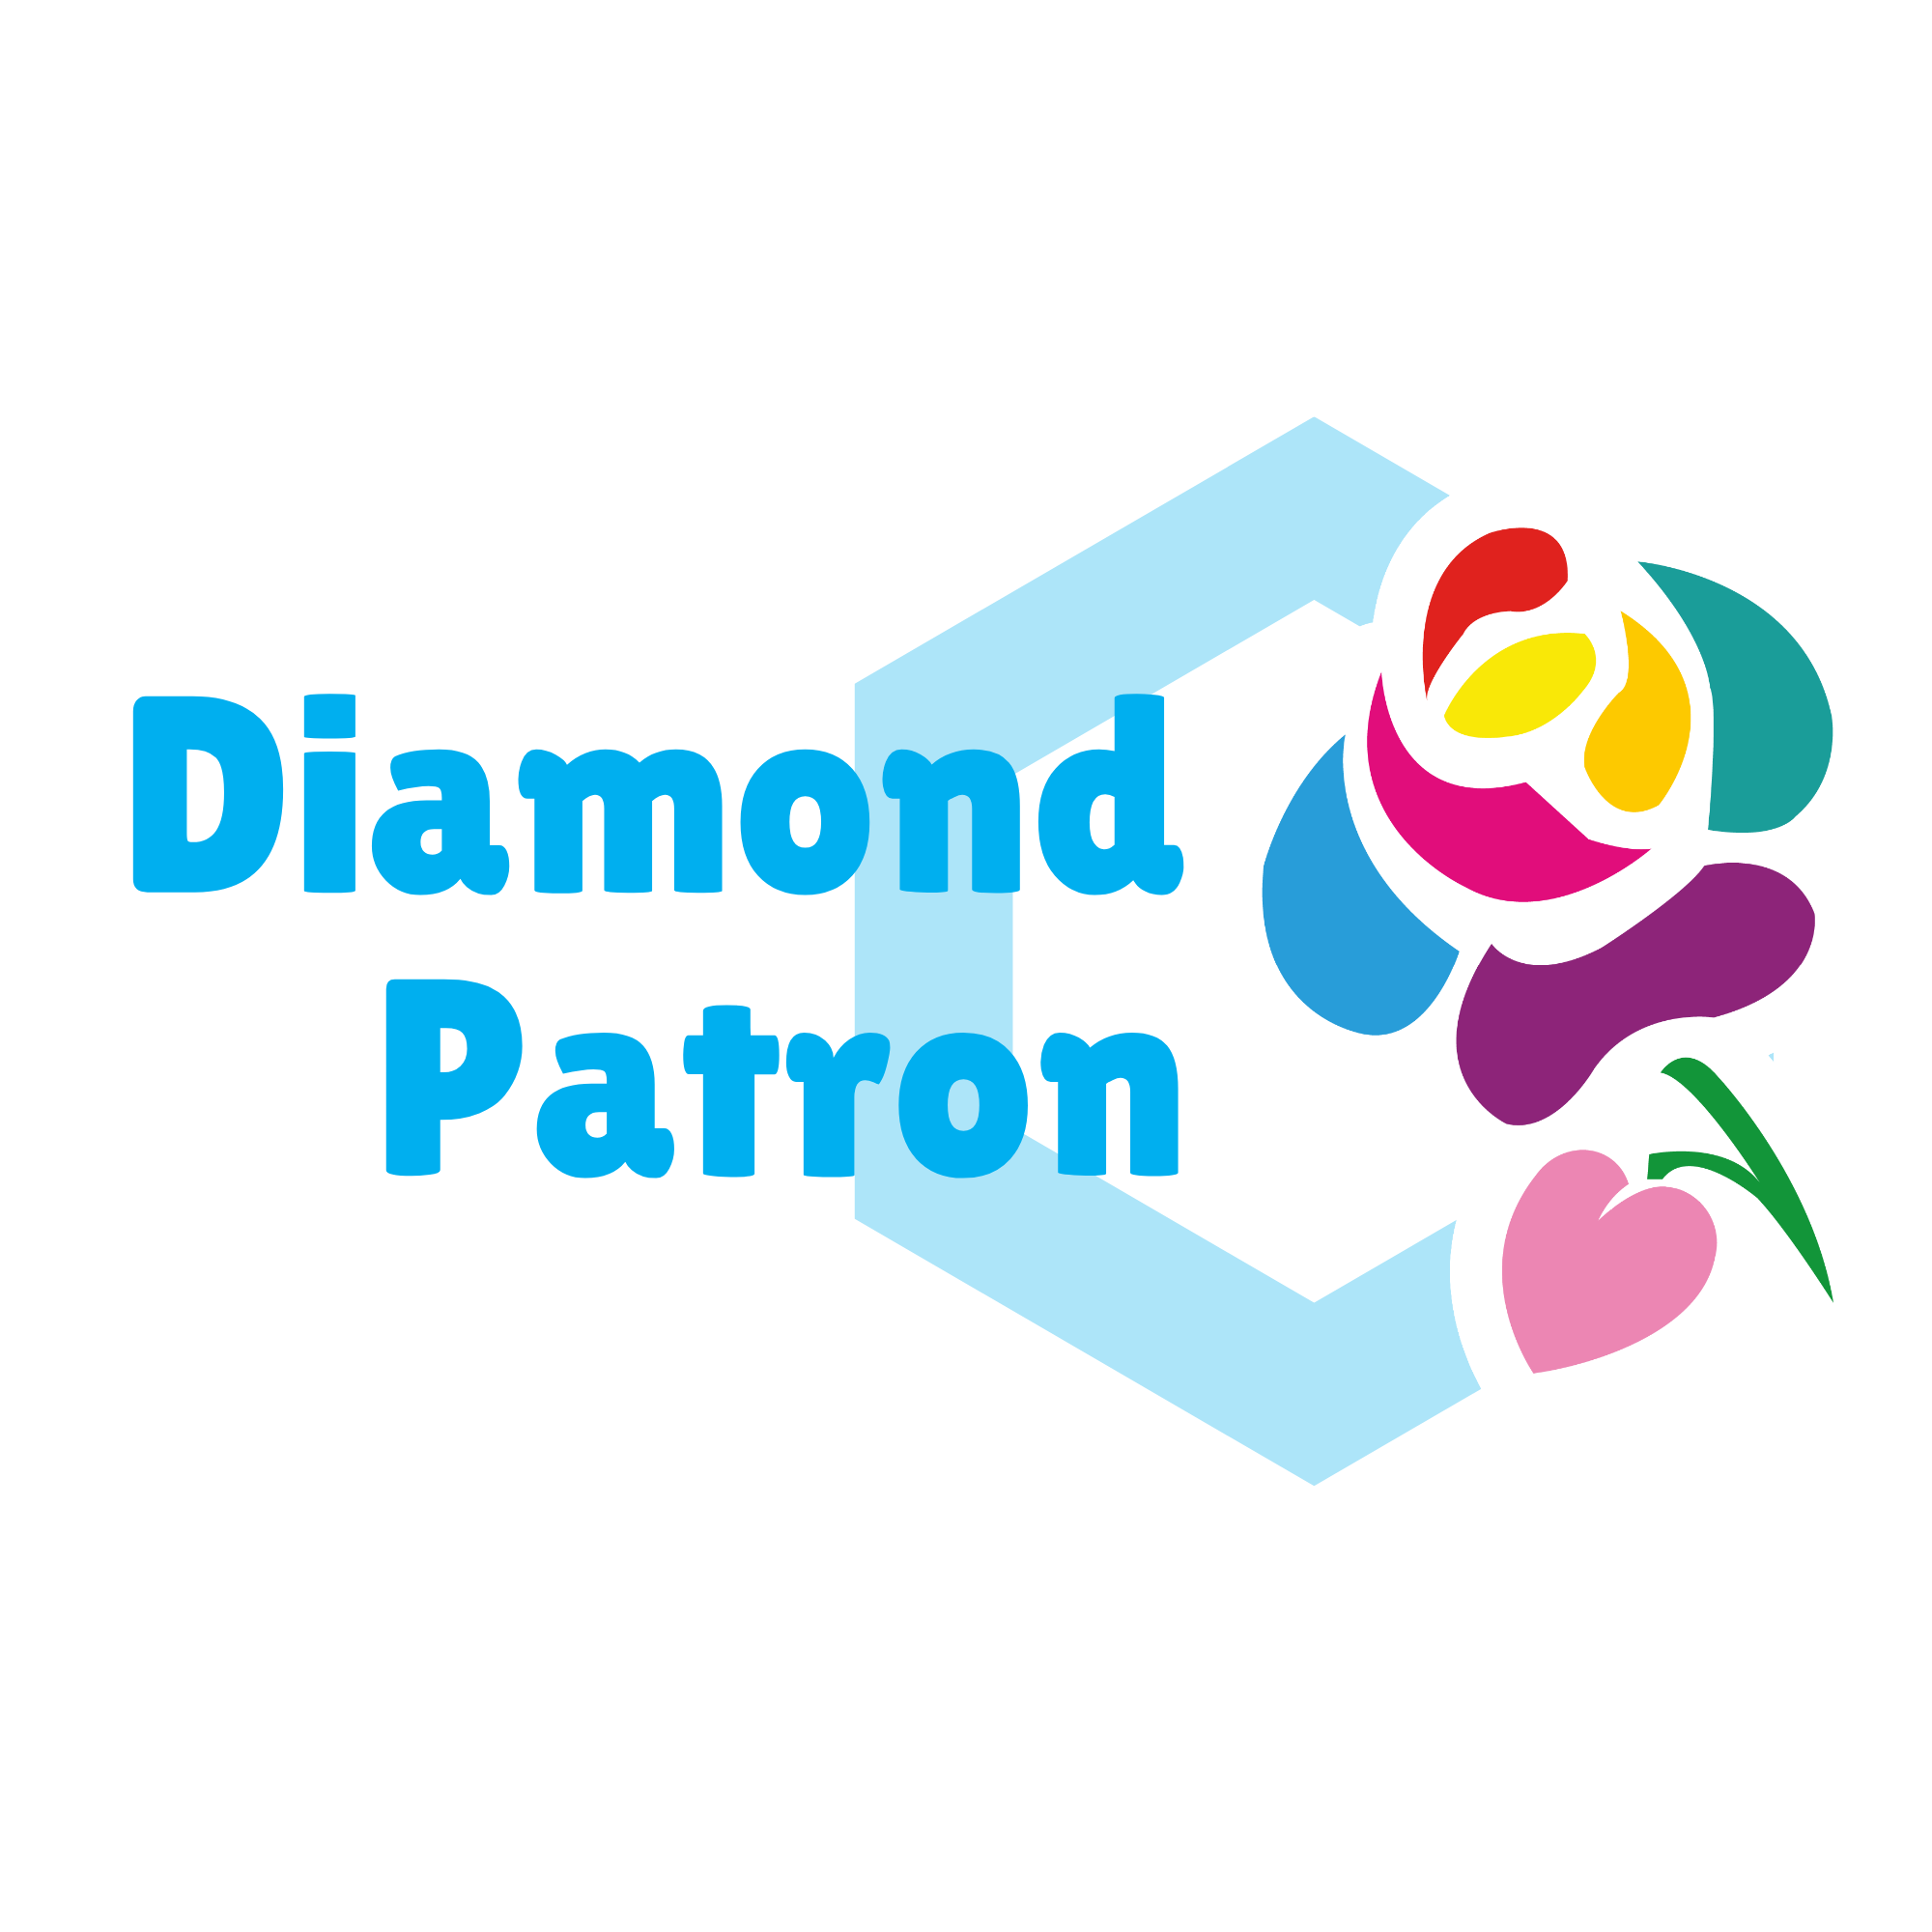 Diamond patron